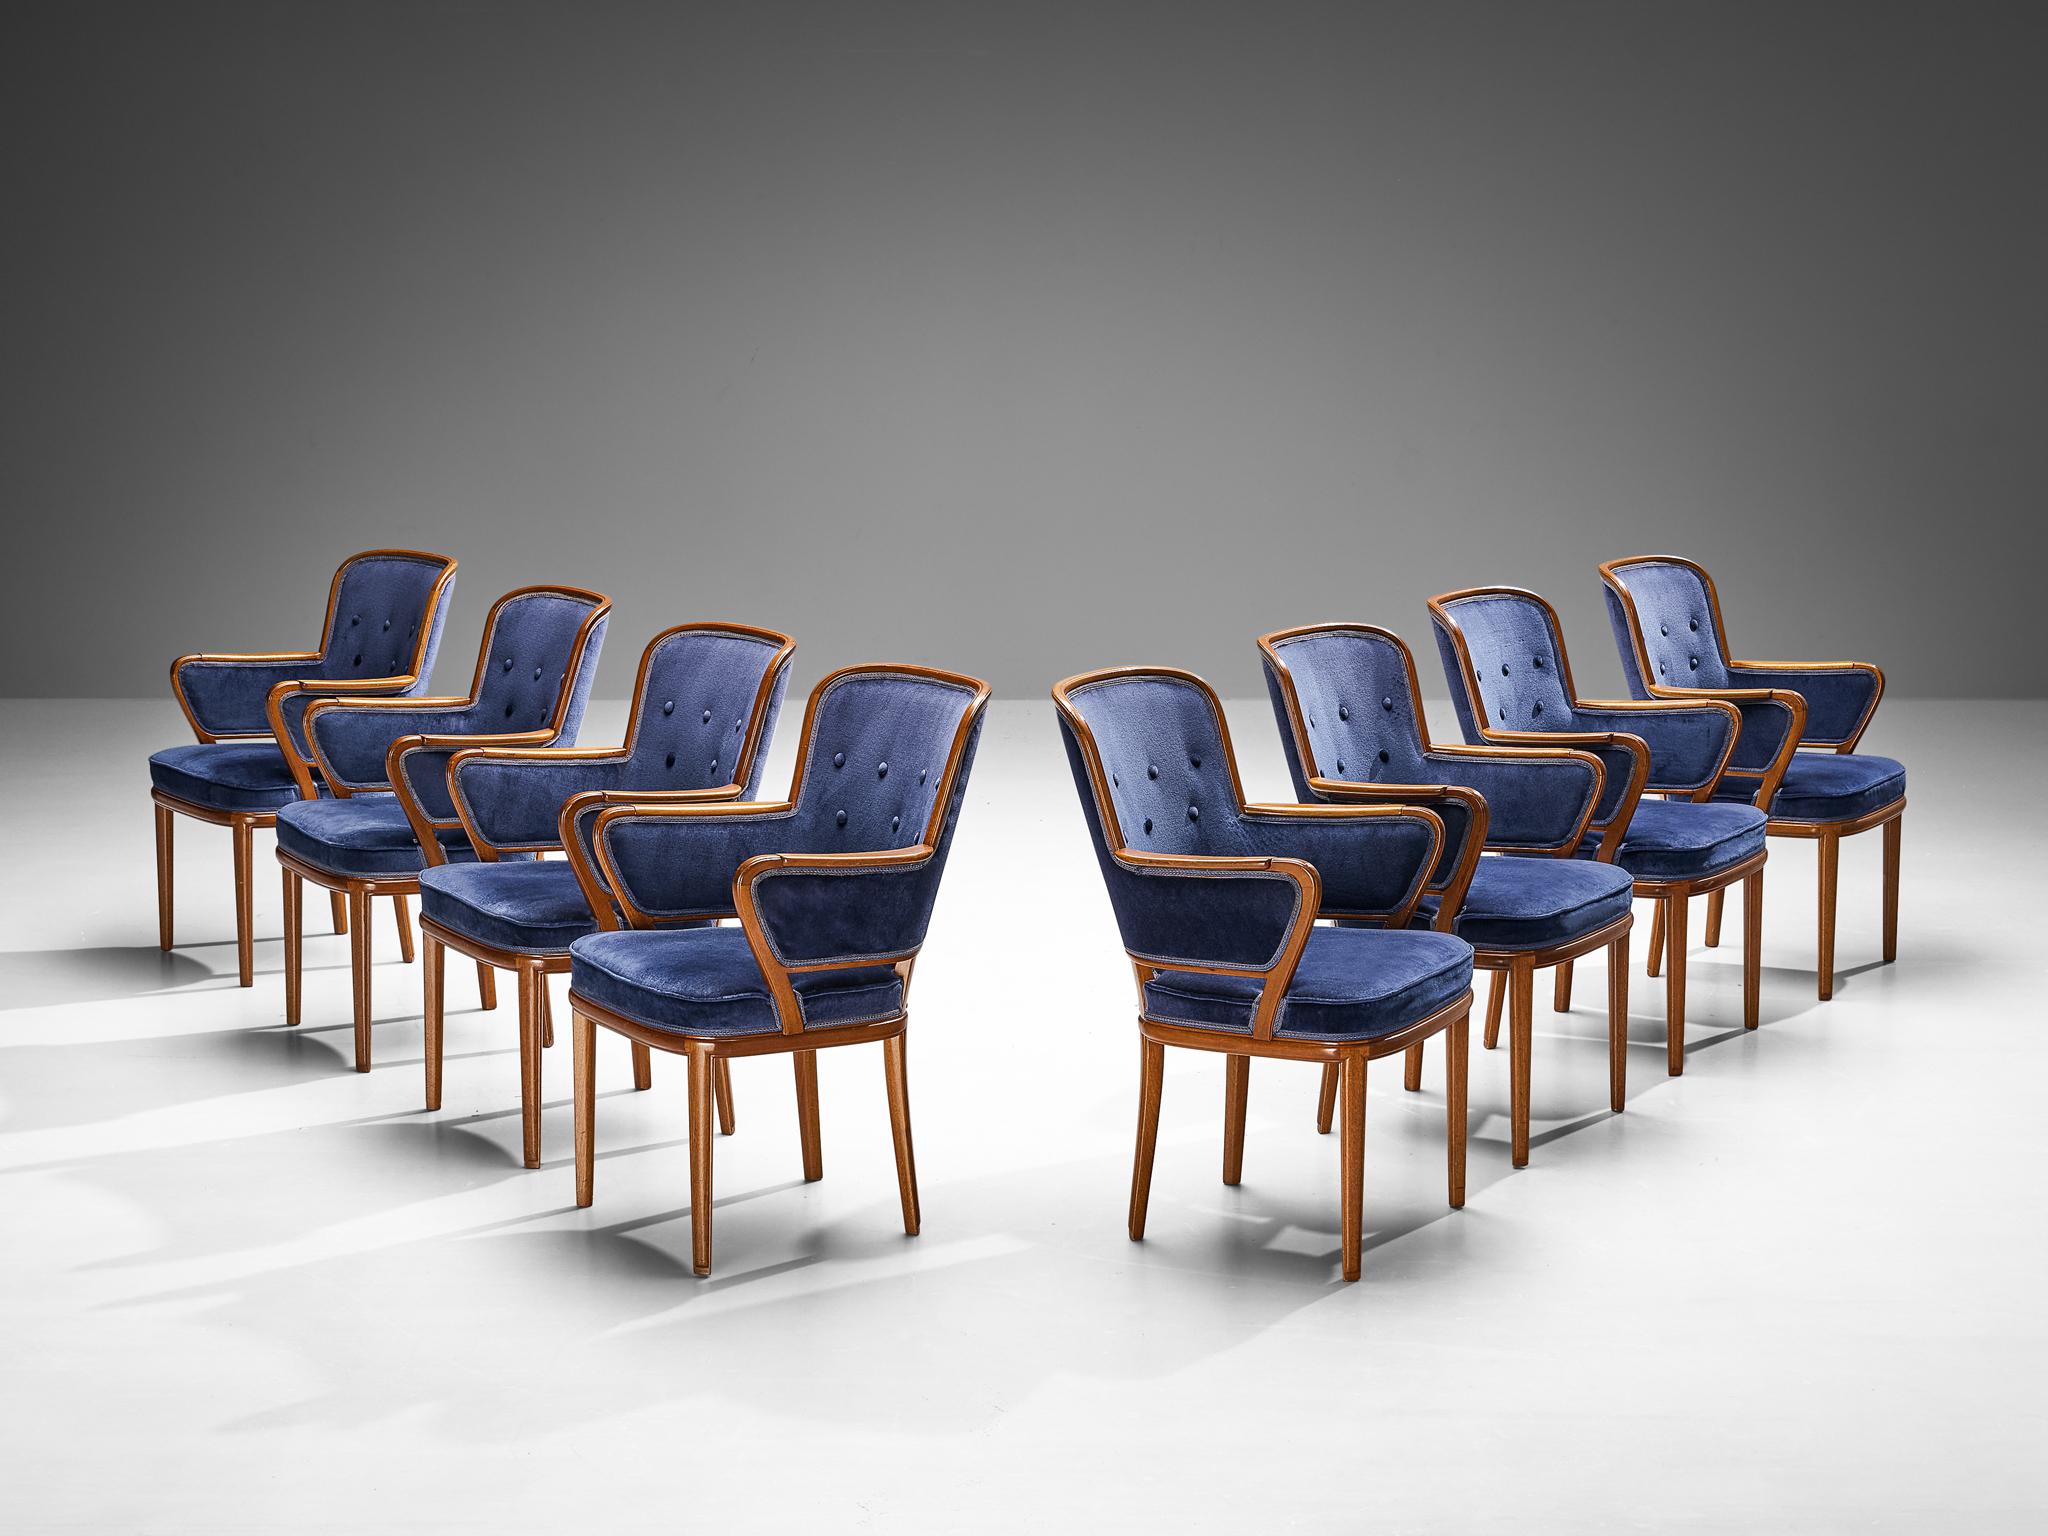 Carl Malmsten, ensemble de huit fauteuils, acajou, velours bleu, Suède, années 1940

Ensemble de fauteuils conçus par le designer suédois Carl Malmsten qui sont difficiles à trouver. Ces chaises sont dotées d'un cadre en acajou chaleureux, dont les